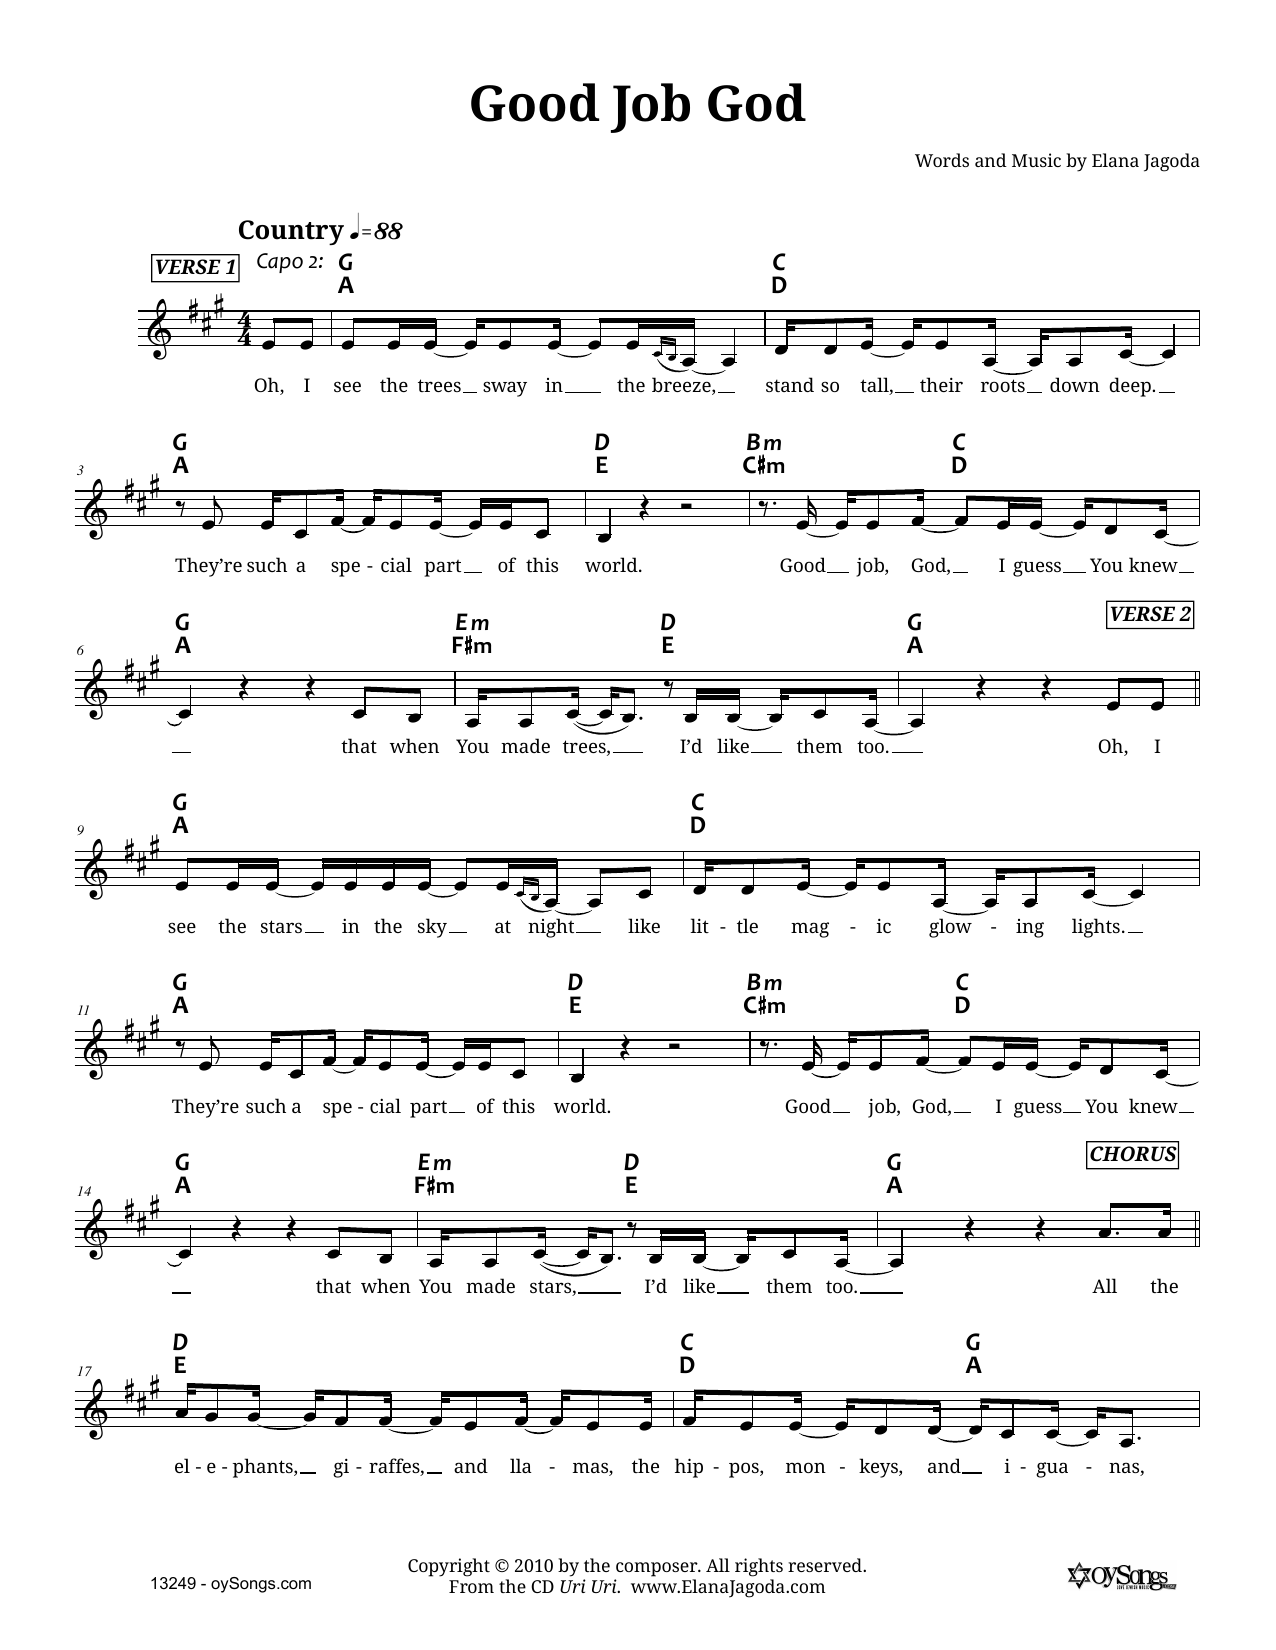 Elana Jagoda Good Job God Sheet Music Notes & Chords for Melody Line, Lyrics & Chords - Download or Print PDF